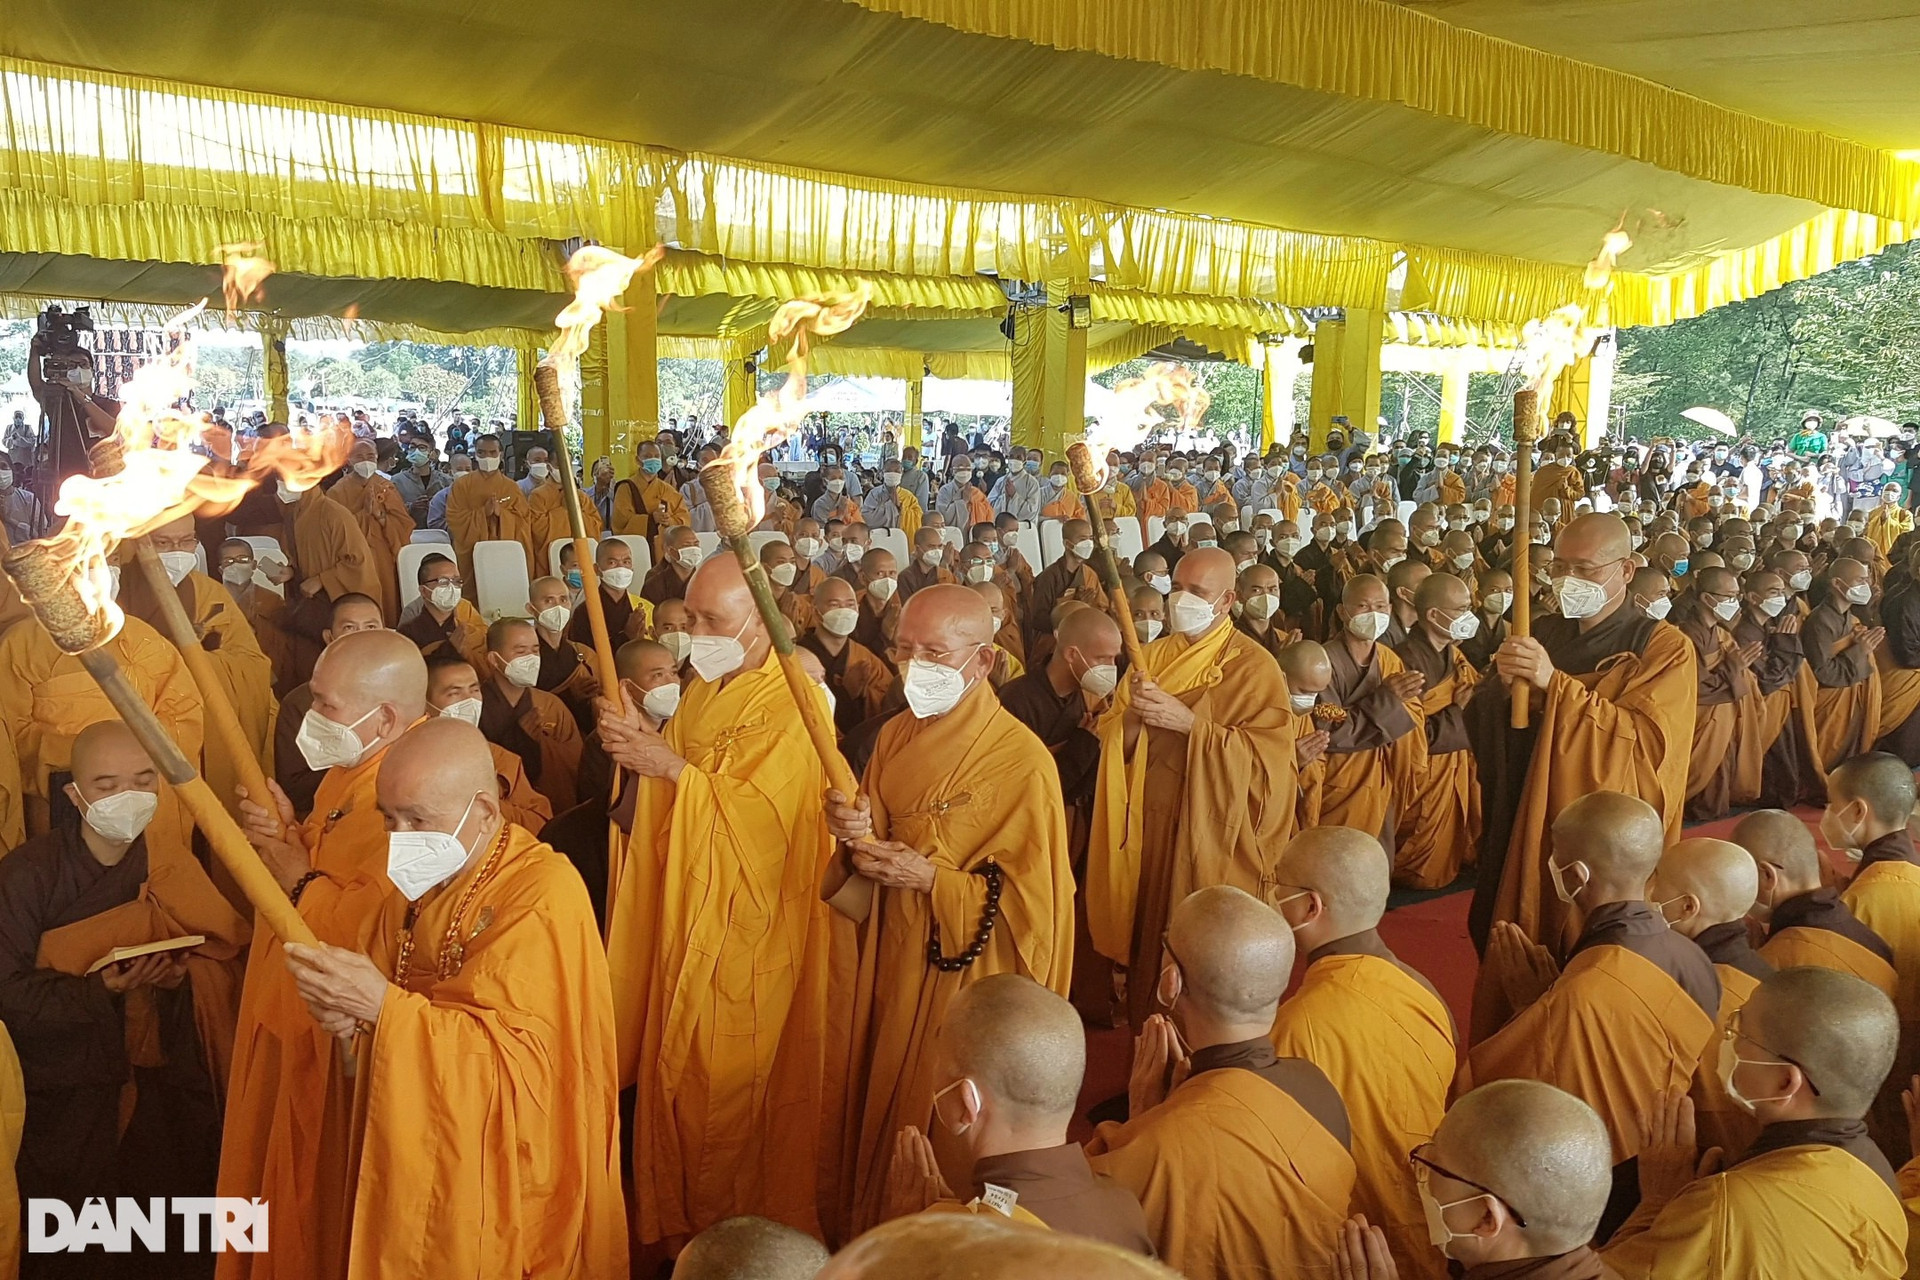 Hàng nghìn người đưa tiễn Thiền sư Thích Nhất Hạnh trong nghi lễ tâm tang - 7